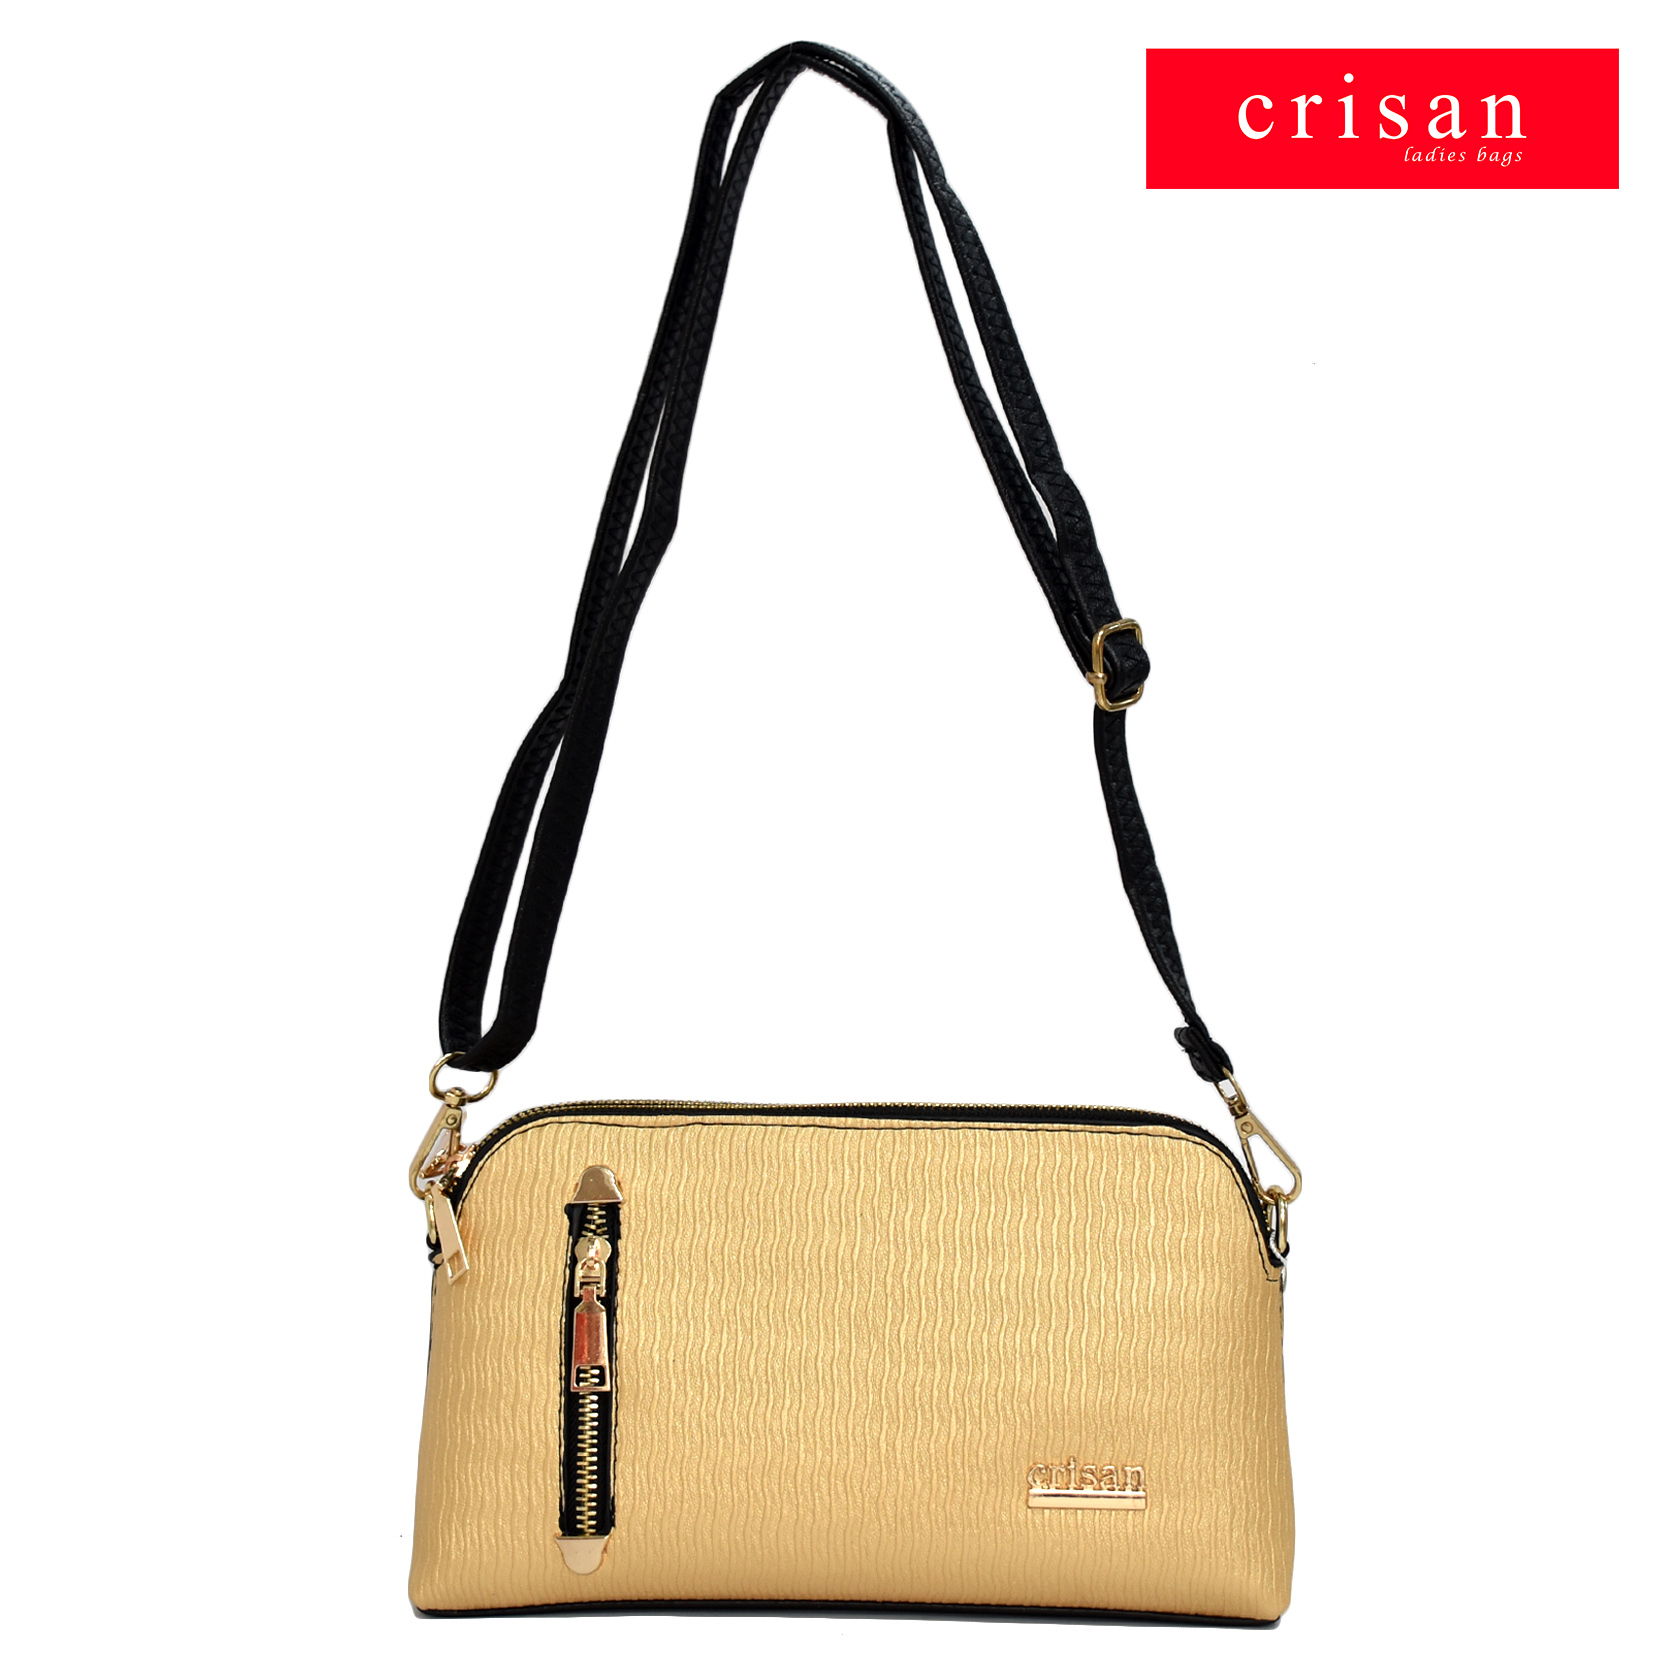 Crisan Bags - Zara - Sling bag: Buy 